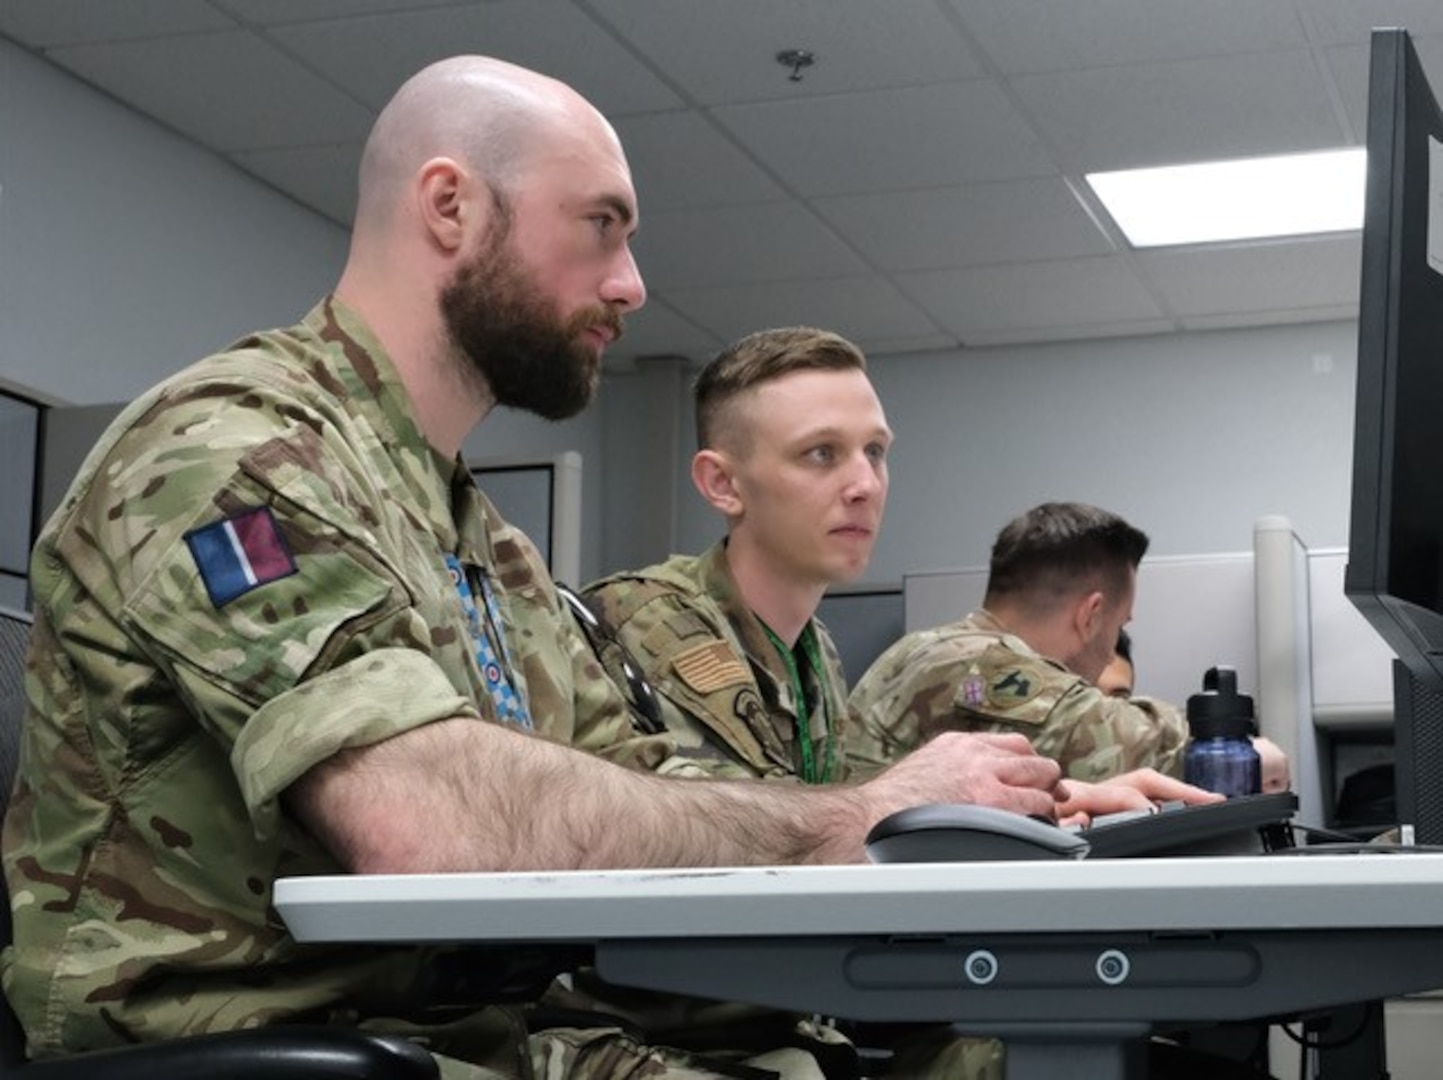 uniformed military members work on computers